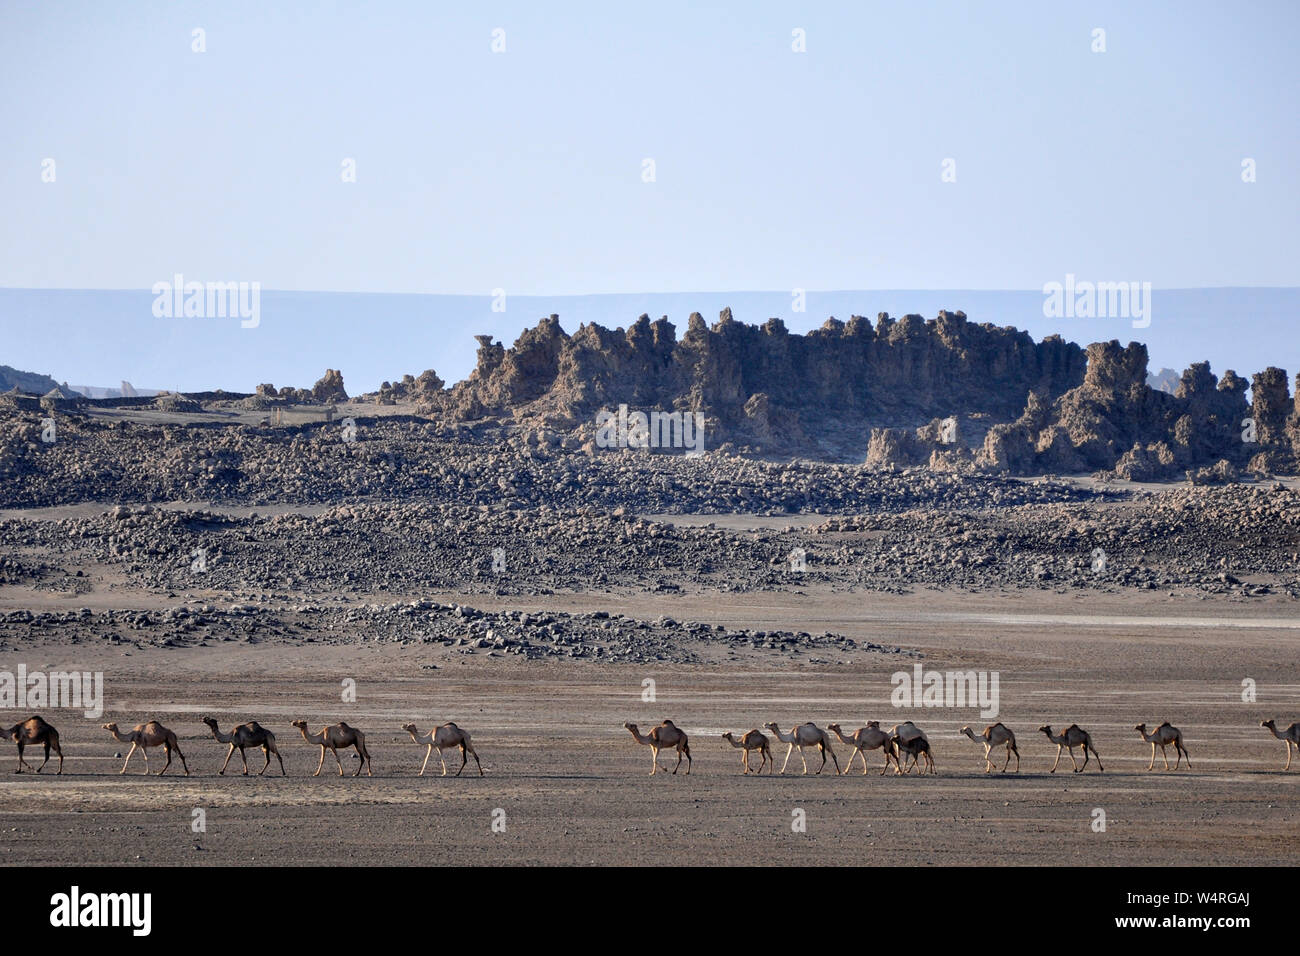 Djibouti, Abbe lake area, camel caravan Stock Photo